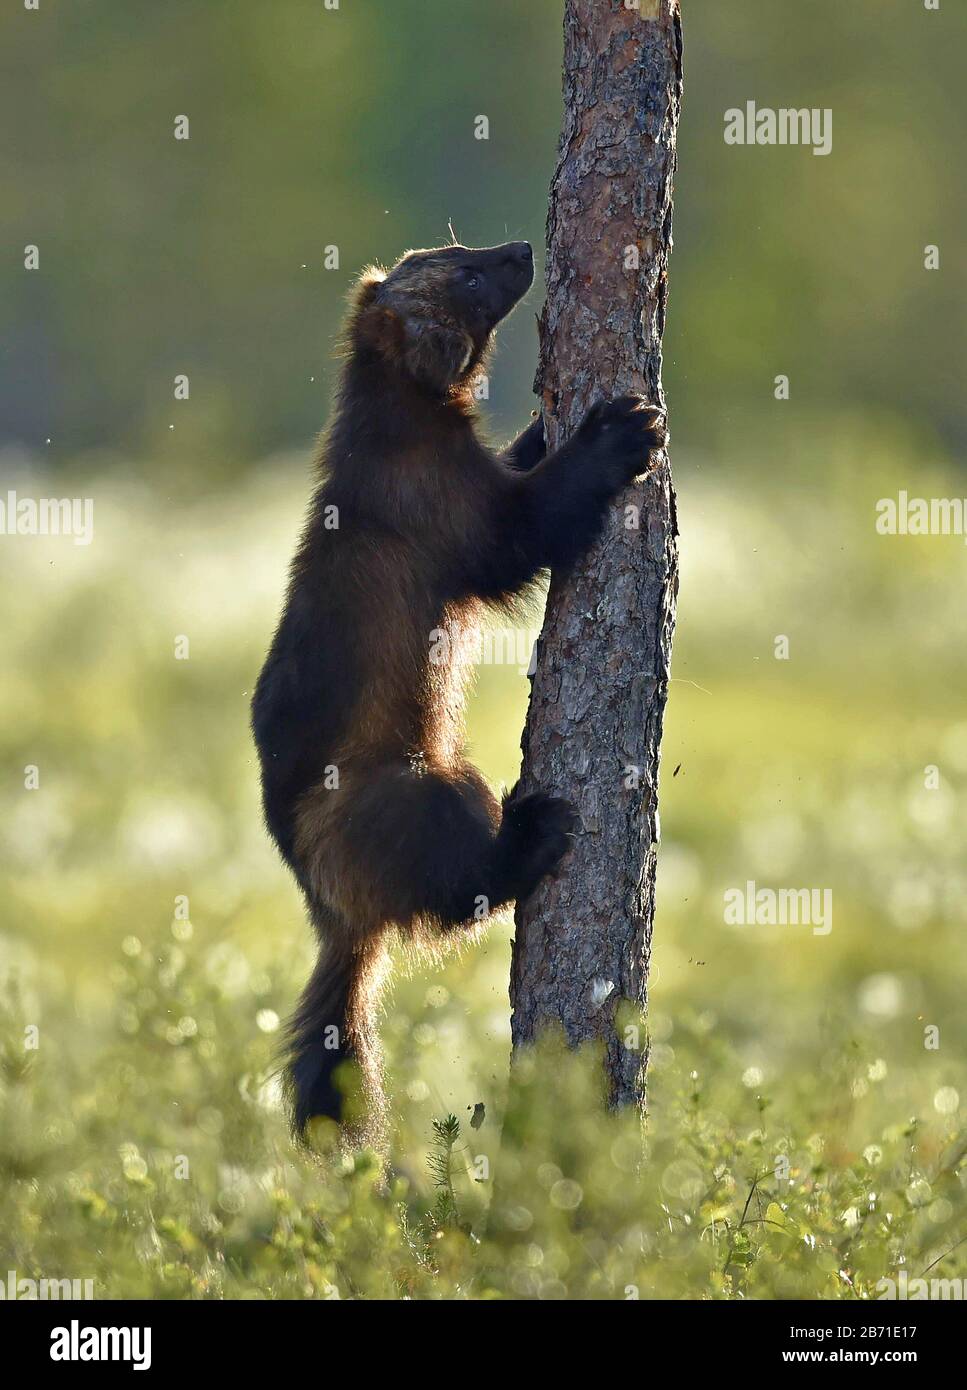 Wolverine arrampicata sull'albero. Natura selvaggia. Habitat naturale. Glutton, carcajou, orso skunk, o quickhatch. Nome scientifico: Gulo gulo Foto Stock